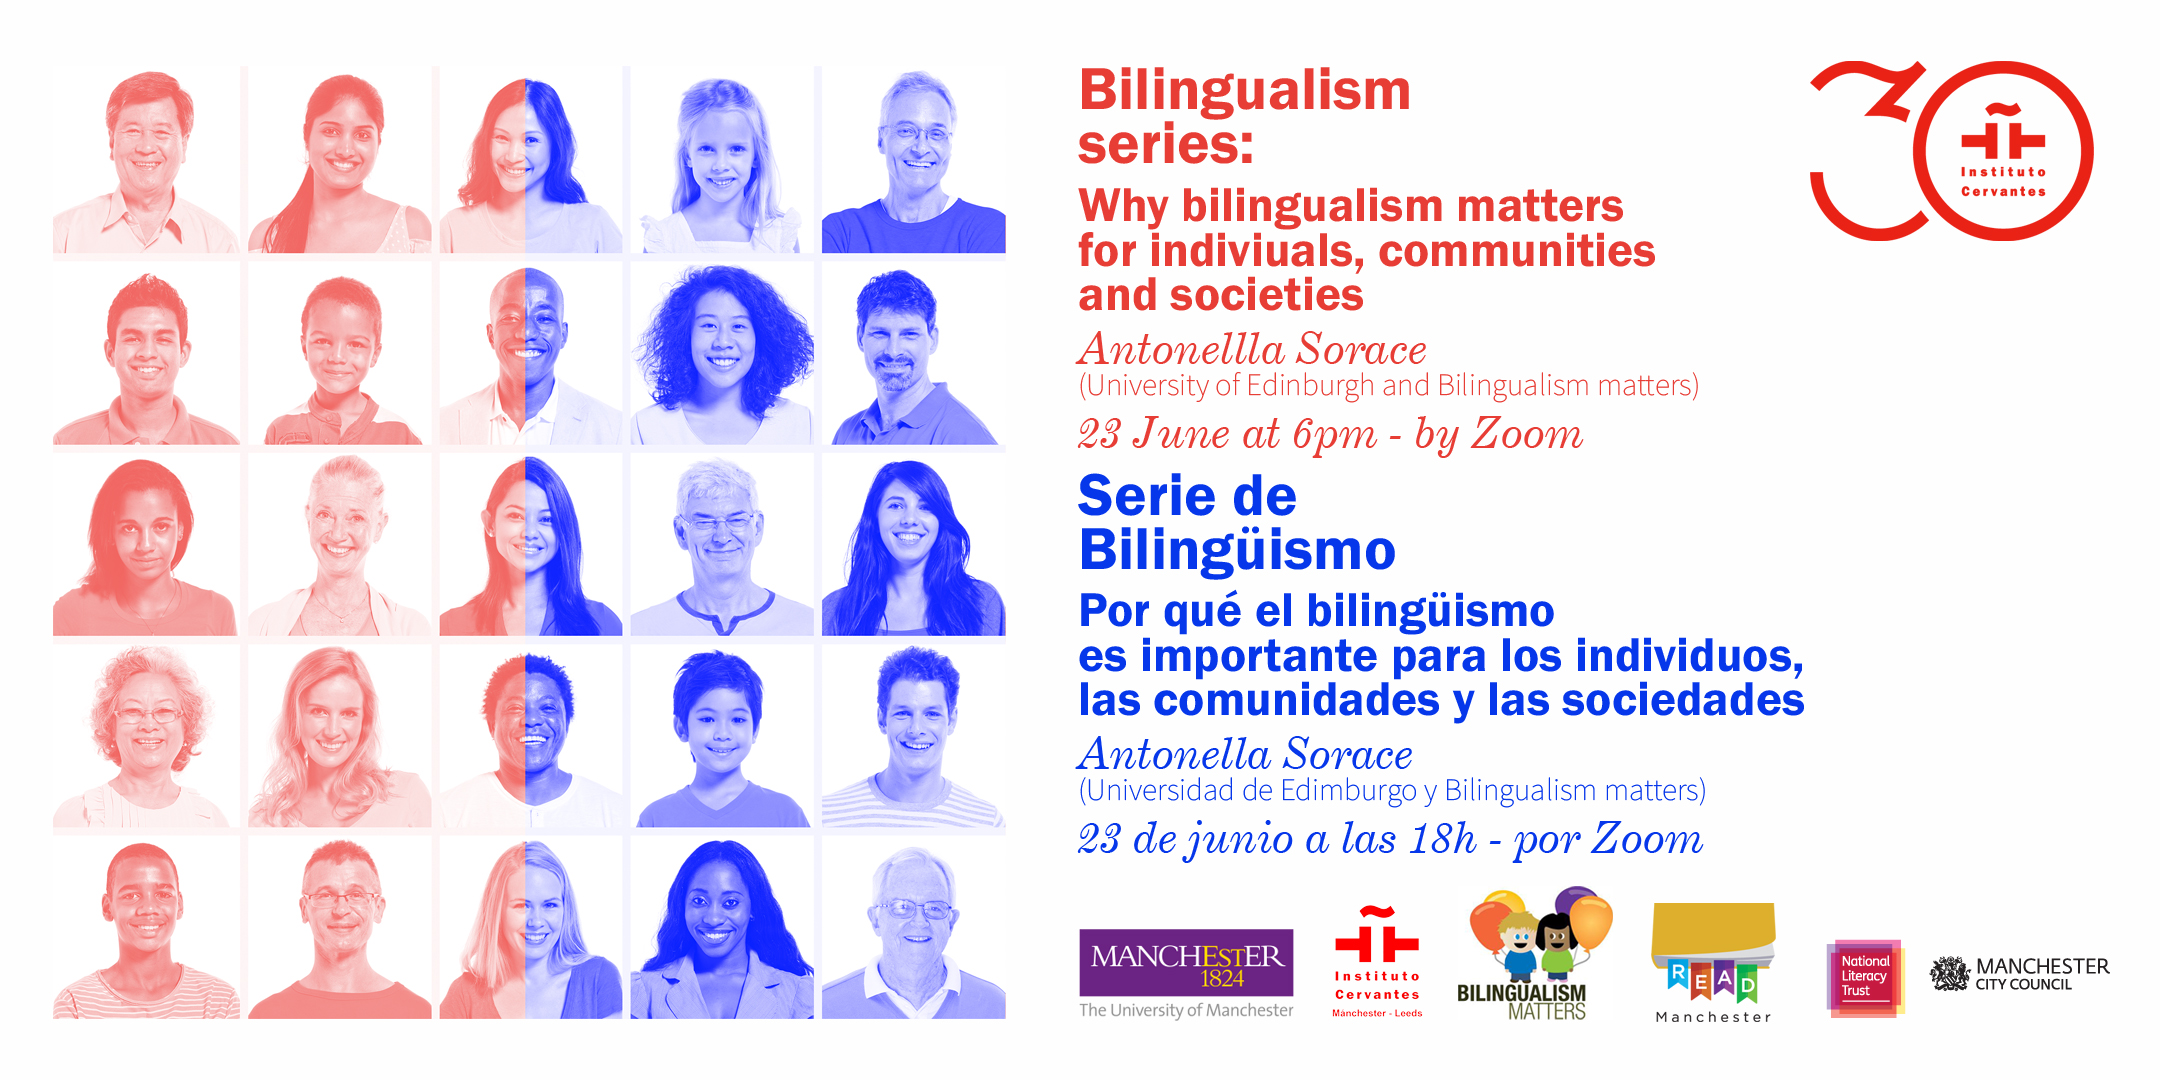 Por qué el bilingüismo es importante para los individuos, las comunidades y las sociedades, por Antonella Sorace